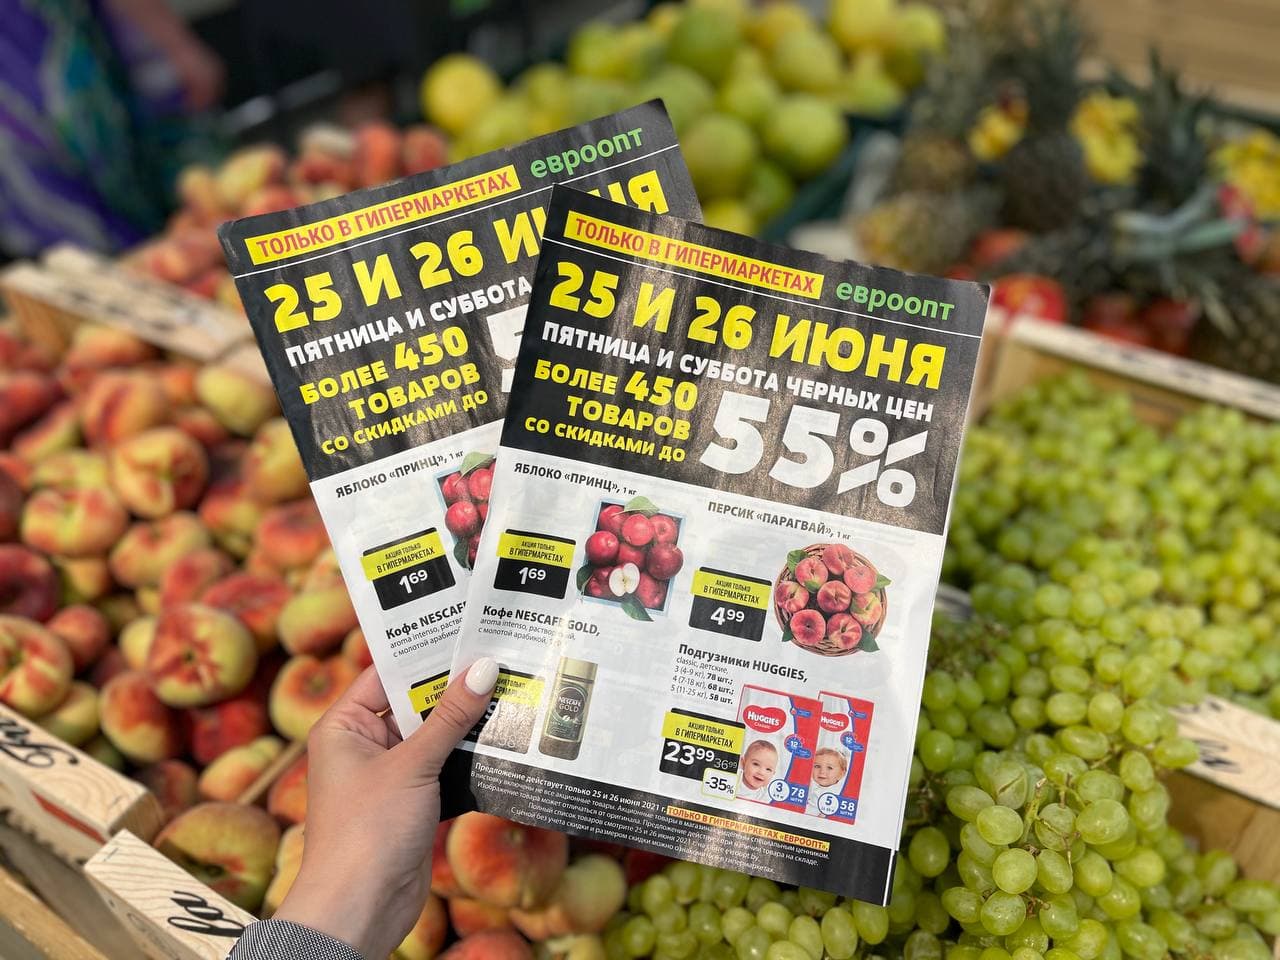 «Евроопт» объявляет в Сморгони «Пятницу и субботу черных цен». Более 450 товаров будут доступны со скидками до 55%